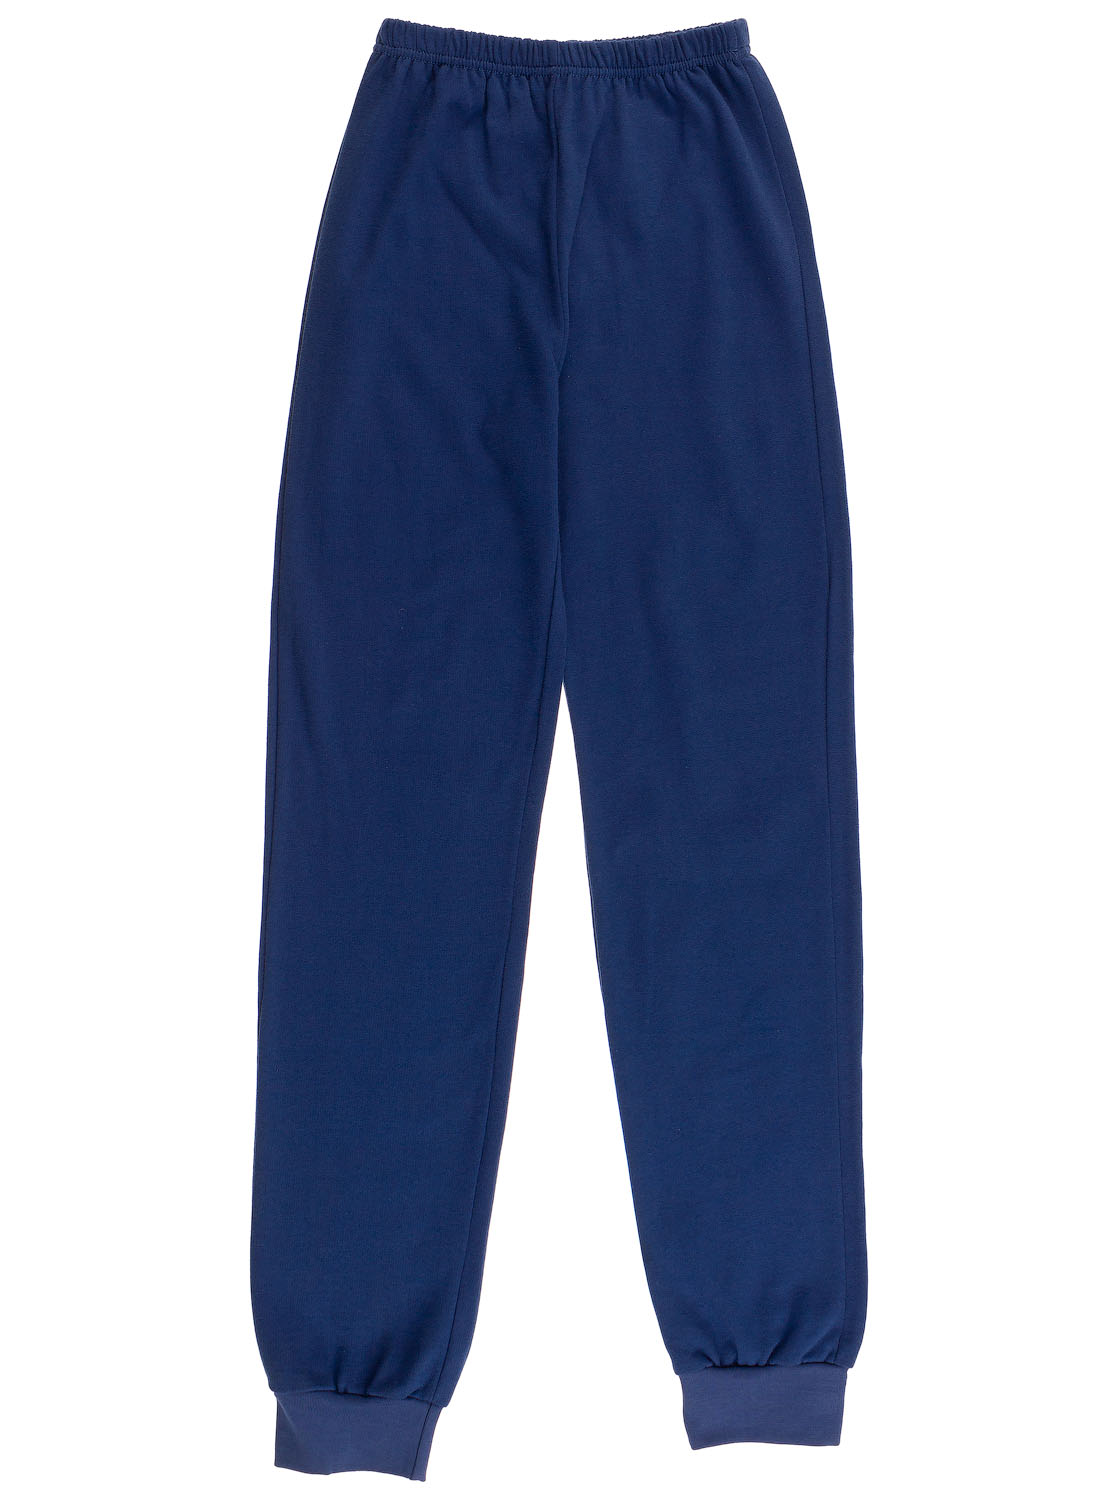 Спортивные штаны для мальчика Valeri tex синие 1610-99-155 - ціна